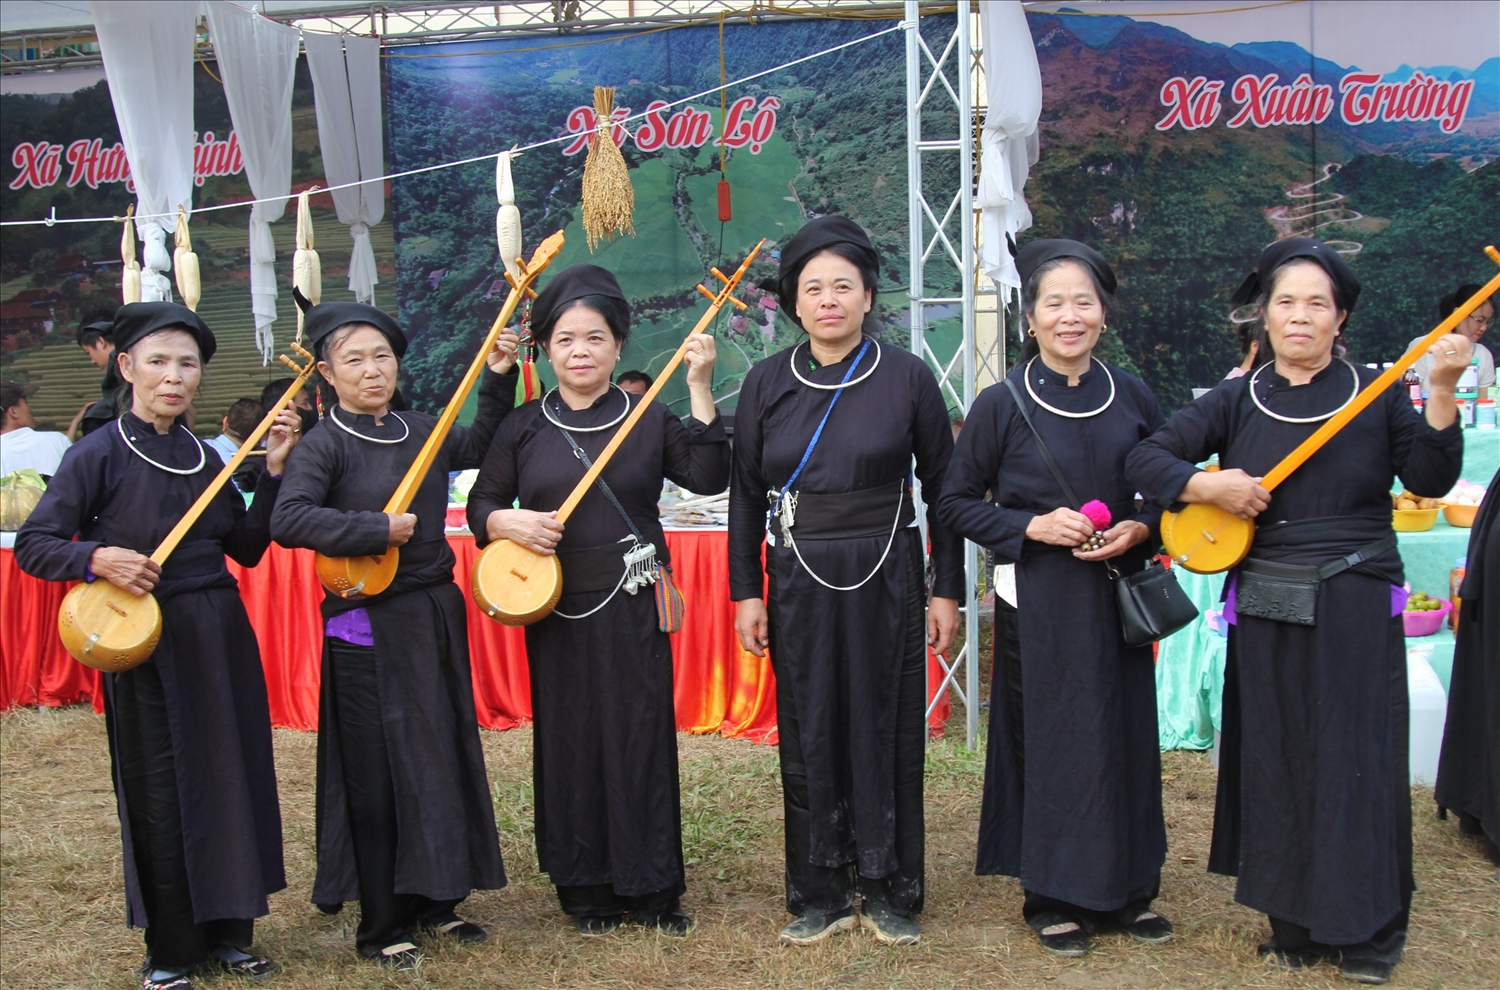 Nhiều câu lạc bộ hát dân ca được thành lập để bảo tồn, gìn giữ văn hoá truyền thống và phát triển du lịch cộng đồng